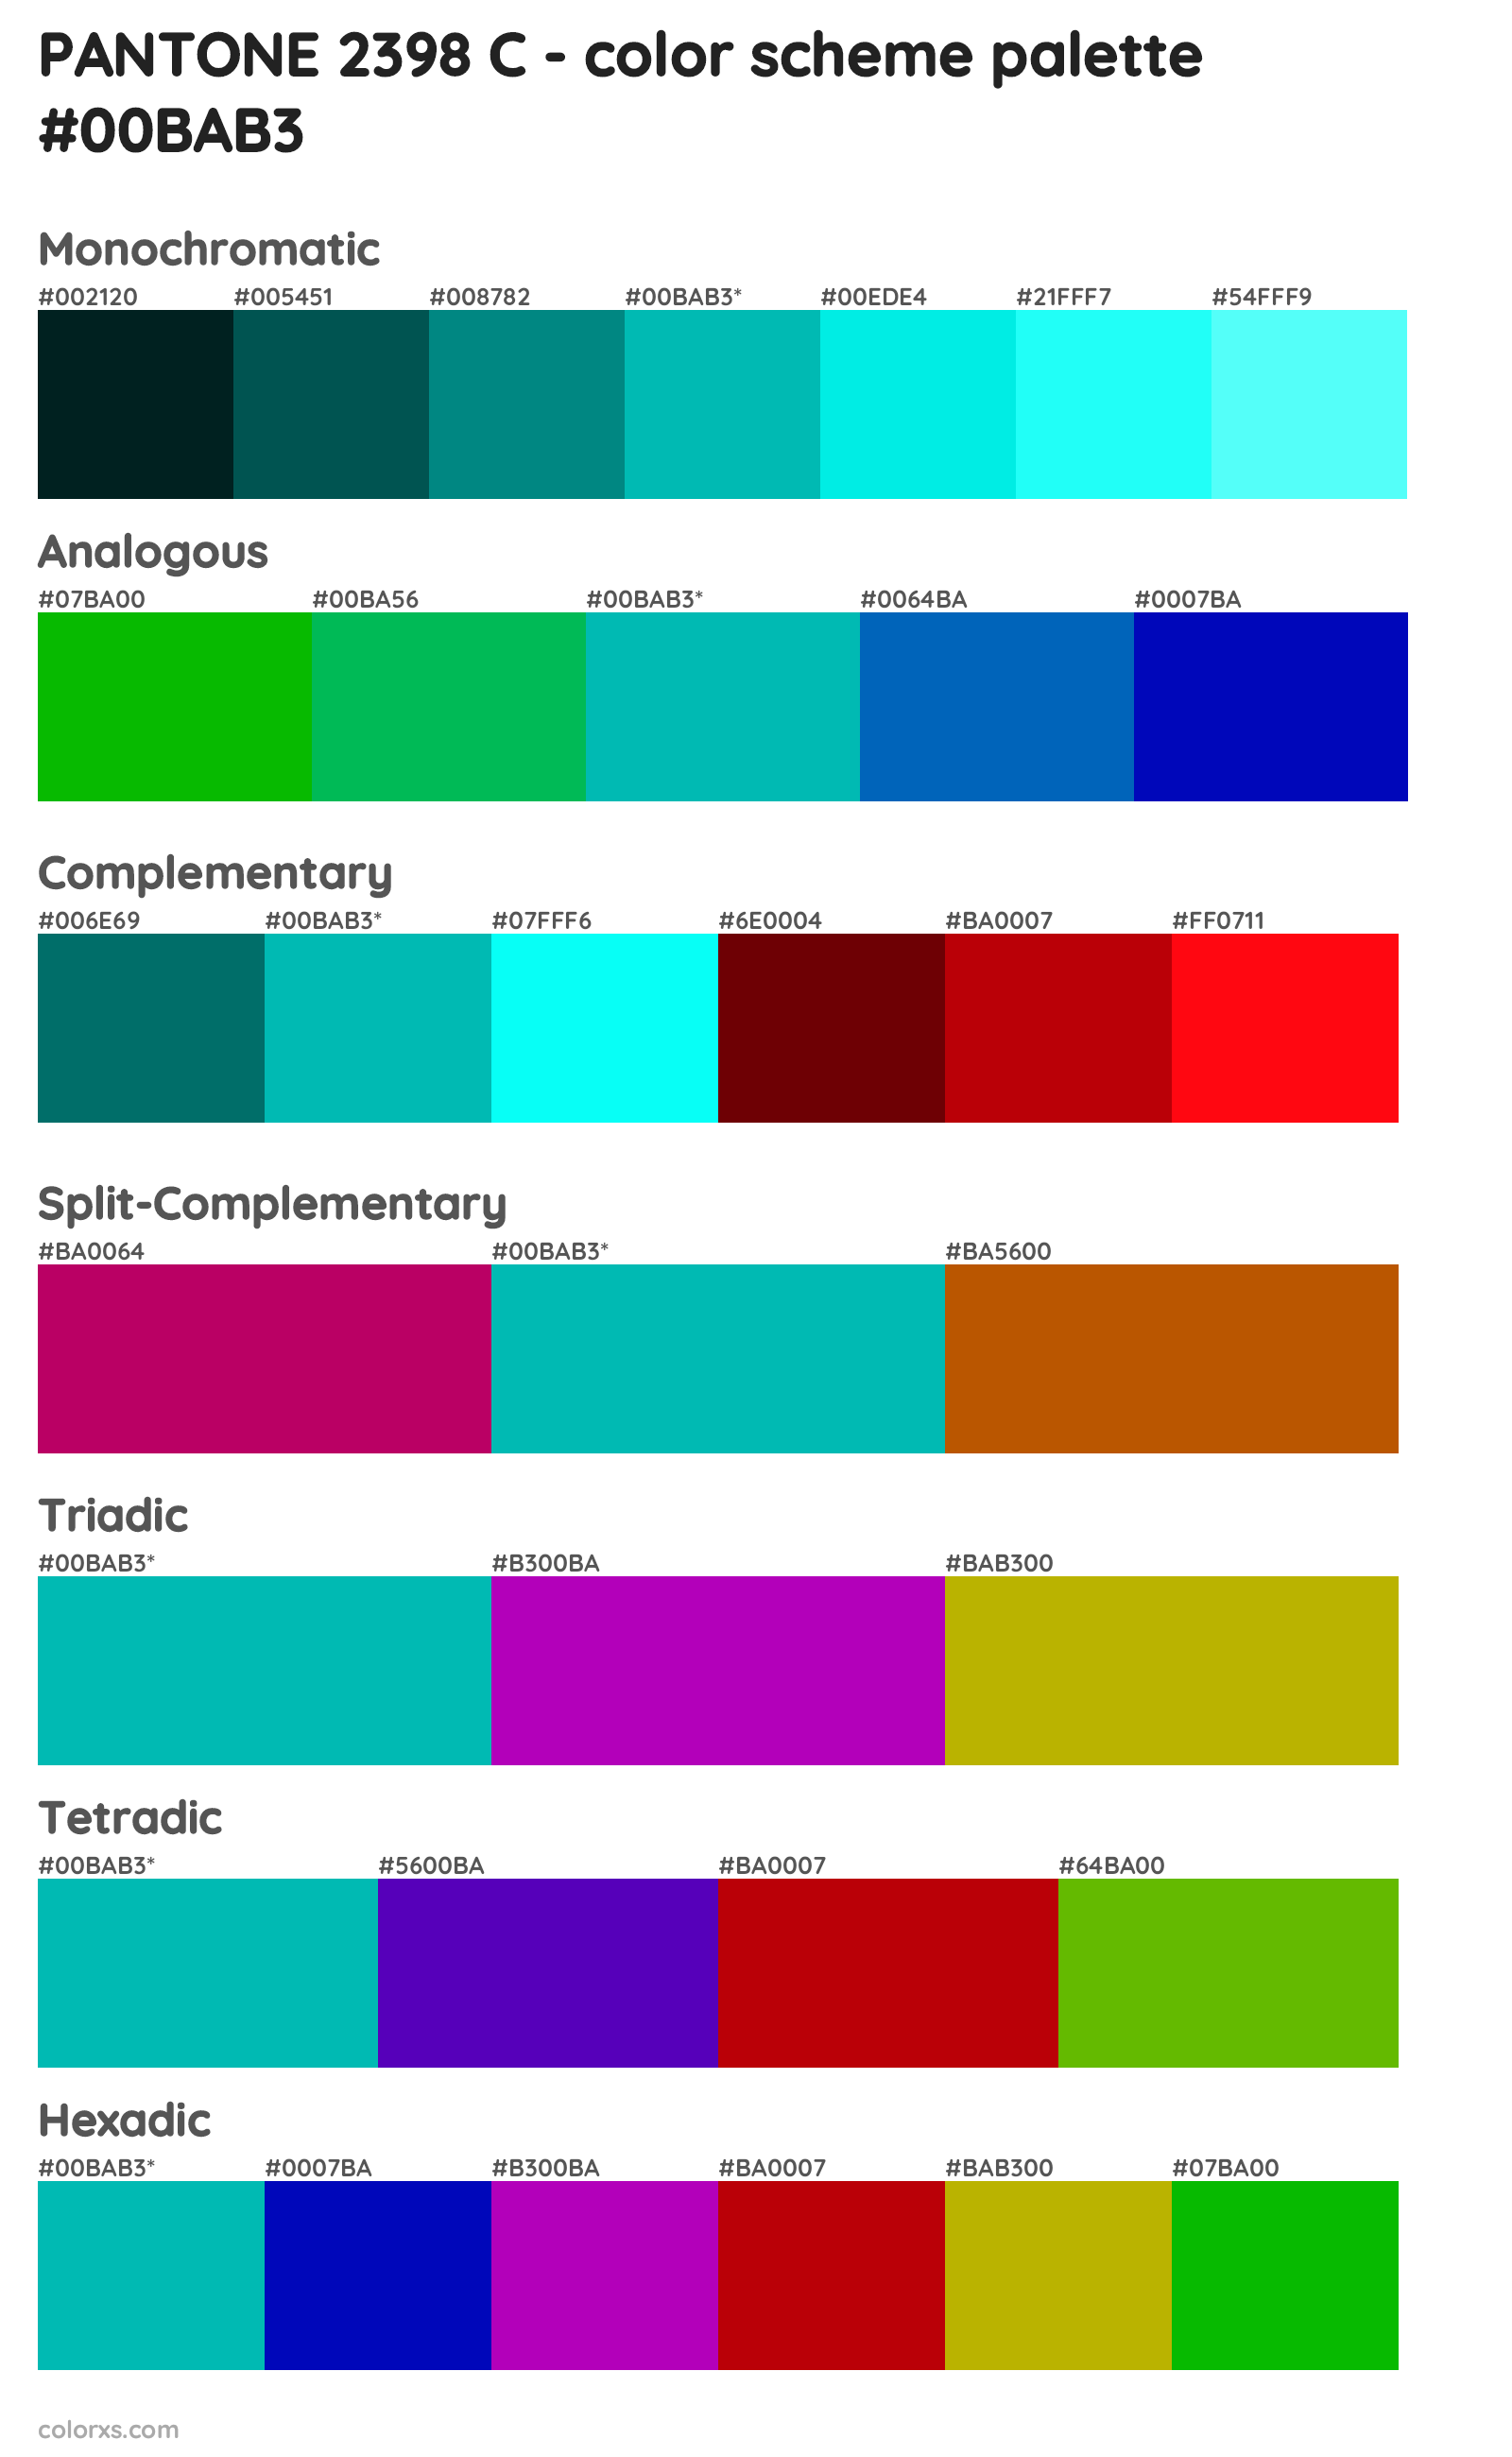 PANTONE 2398 C Color Scheme Palettes